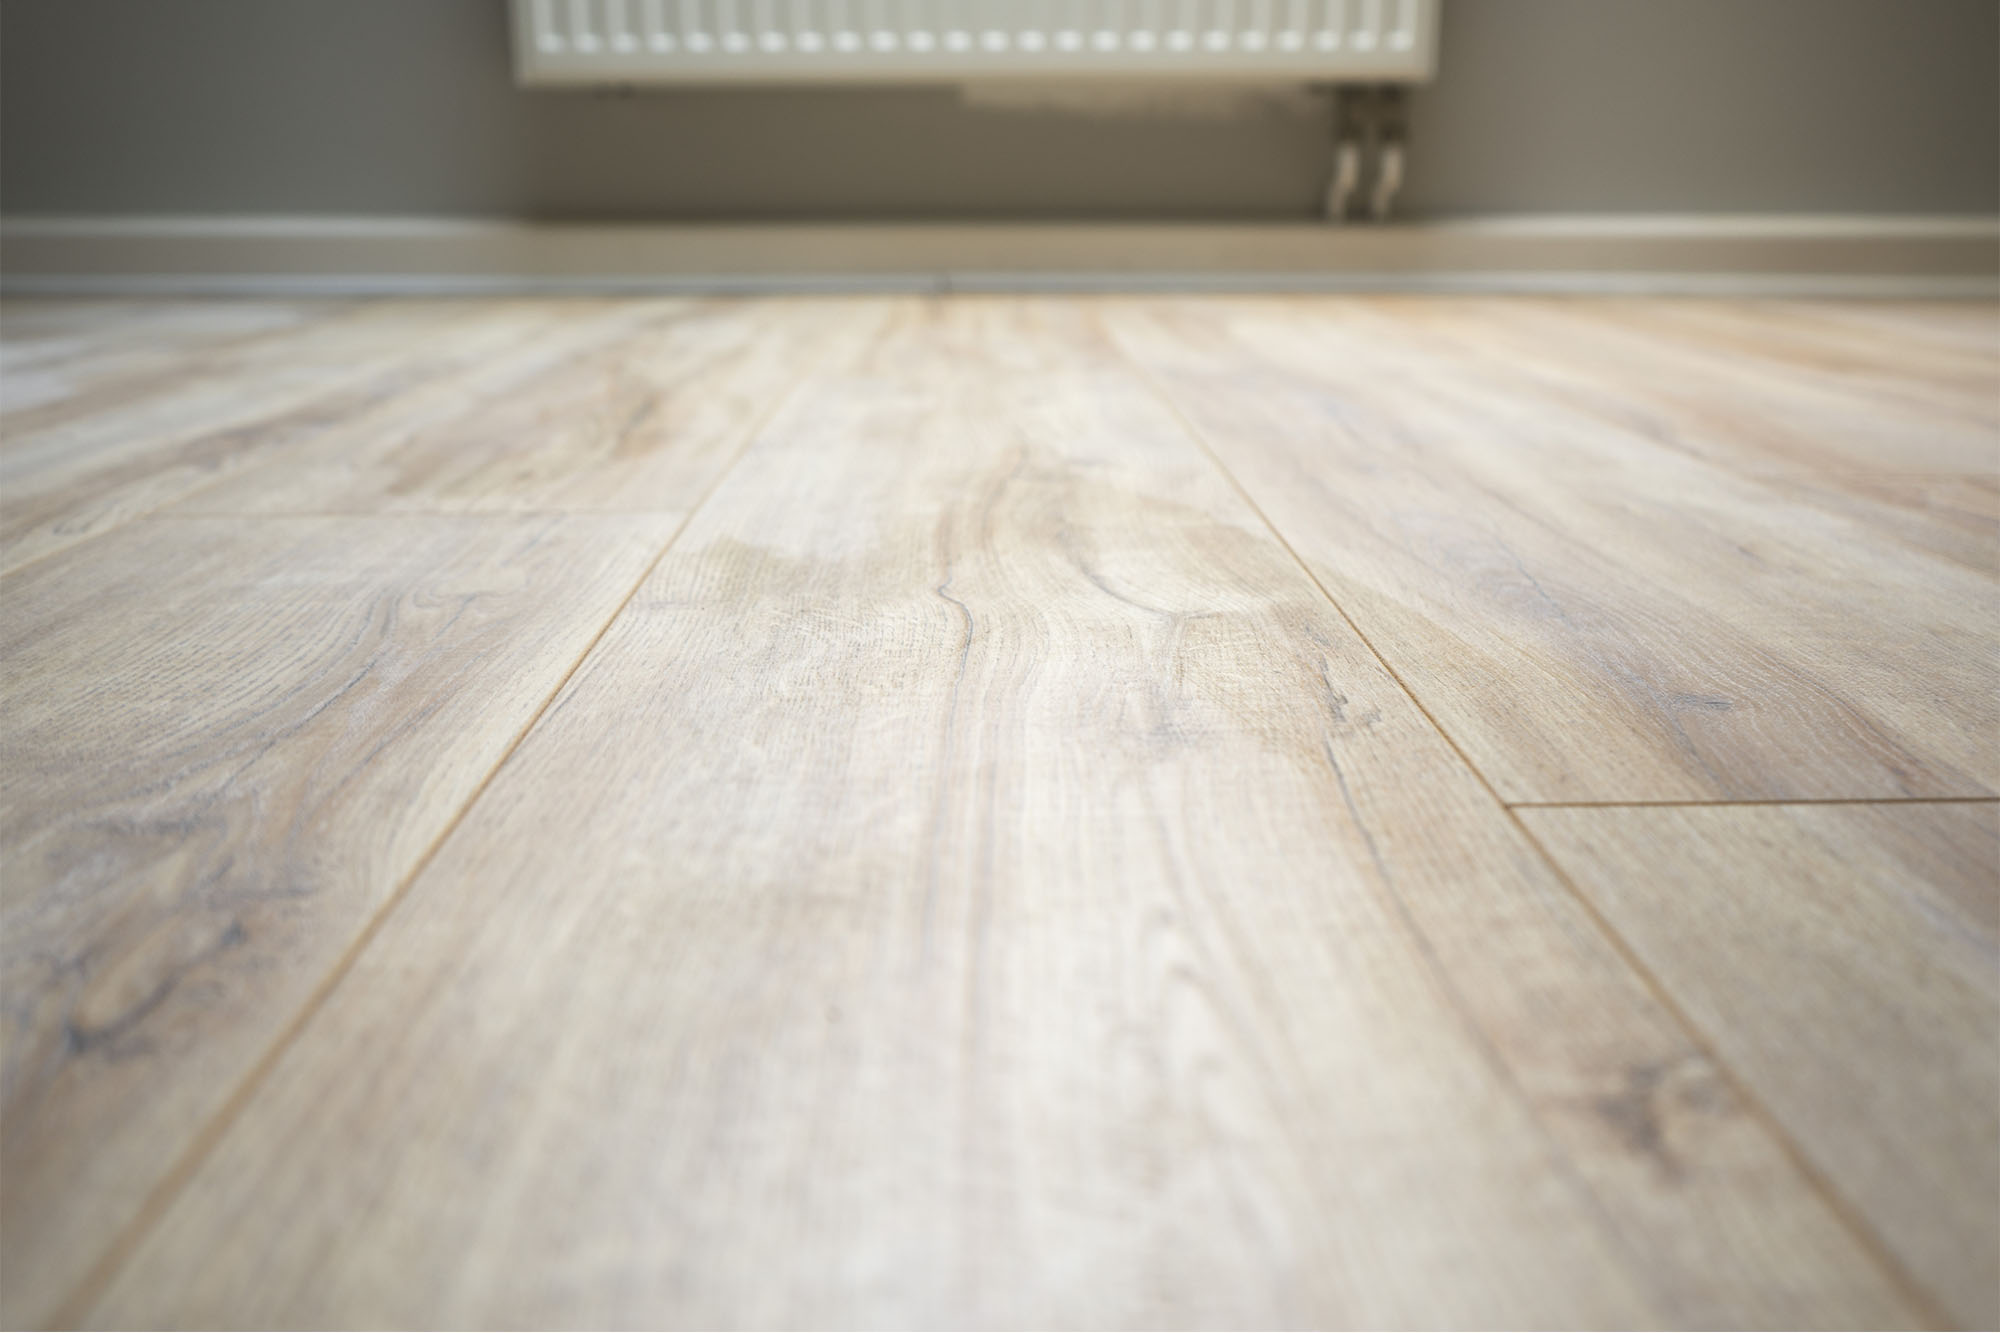 Our signature laminate floor “Home Bau”